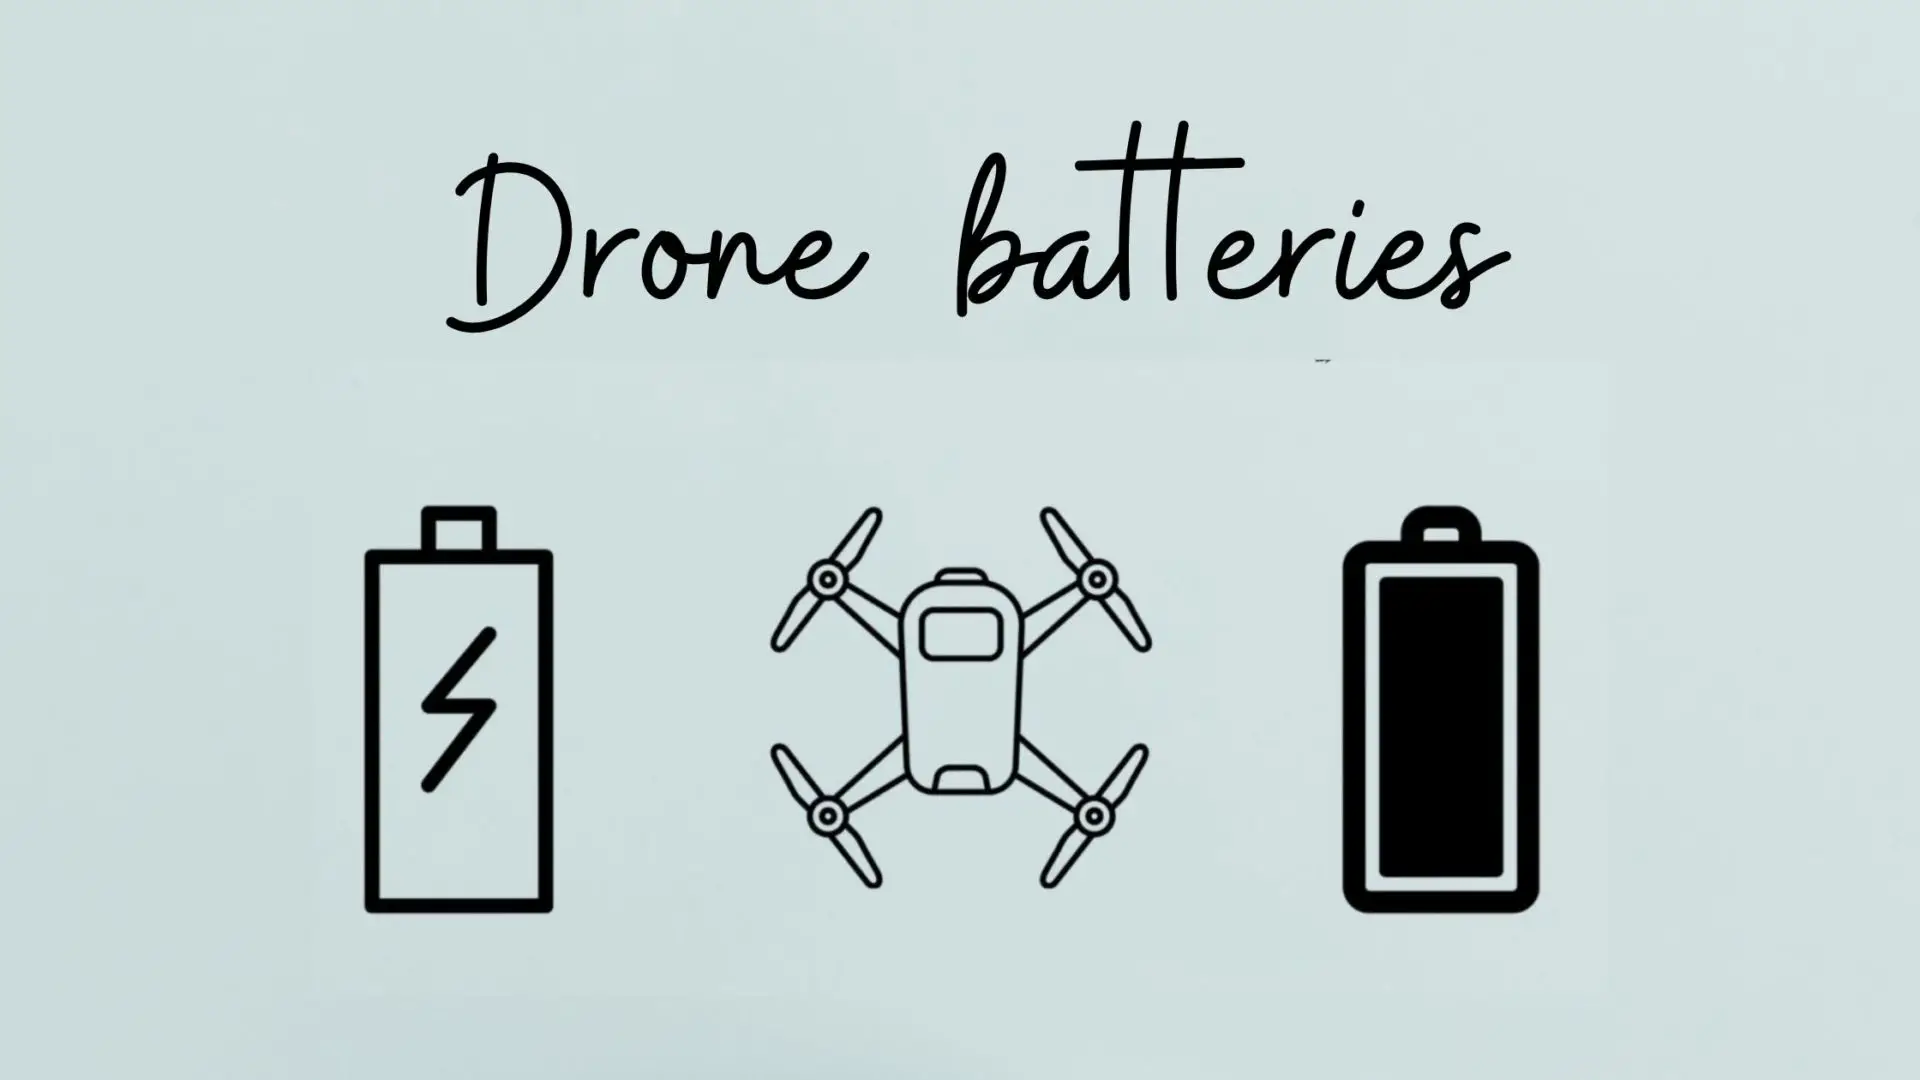 Mini drone batteries